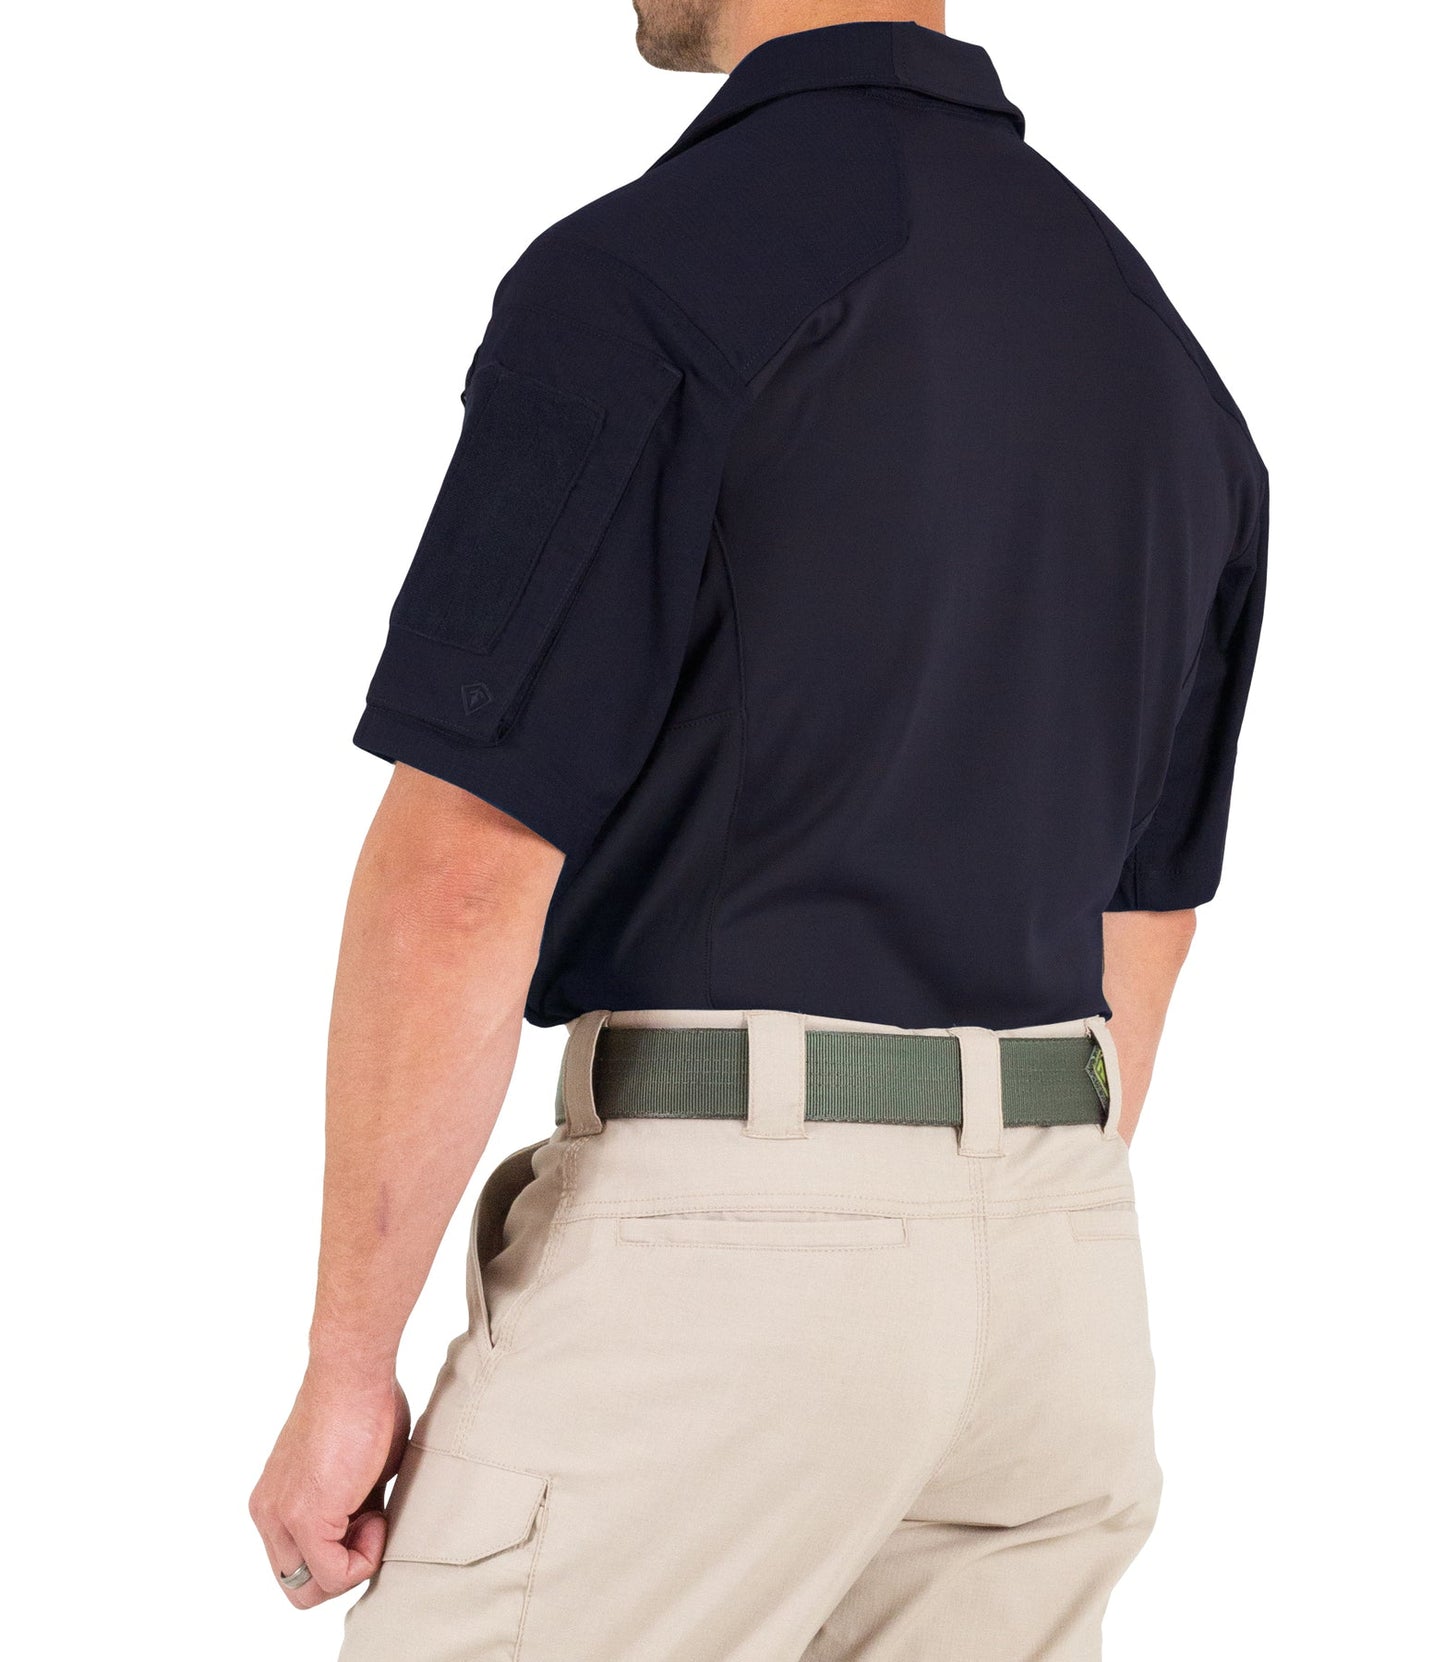 Defender Tactical Combat Shirt - Short Sleeve